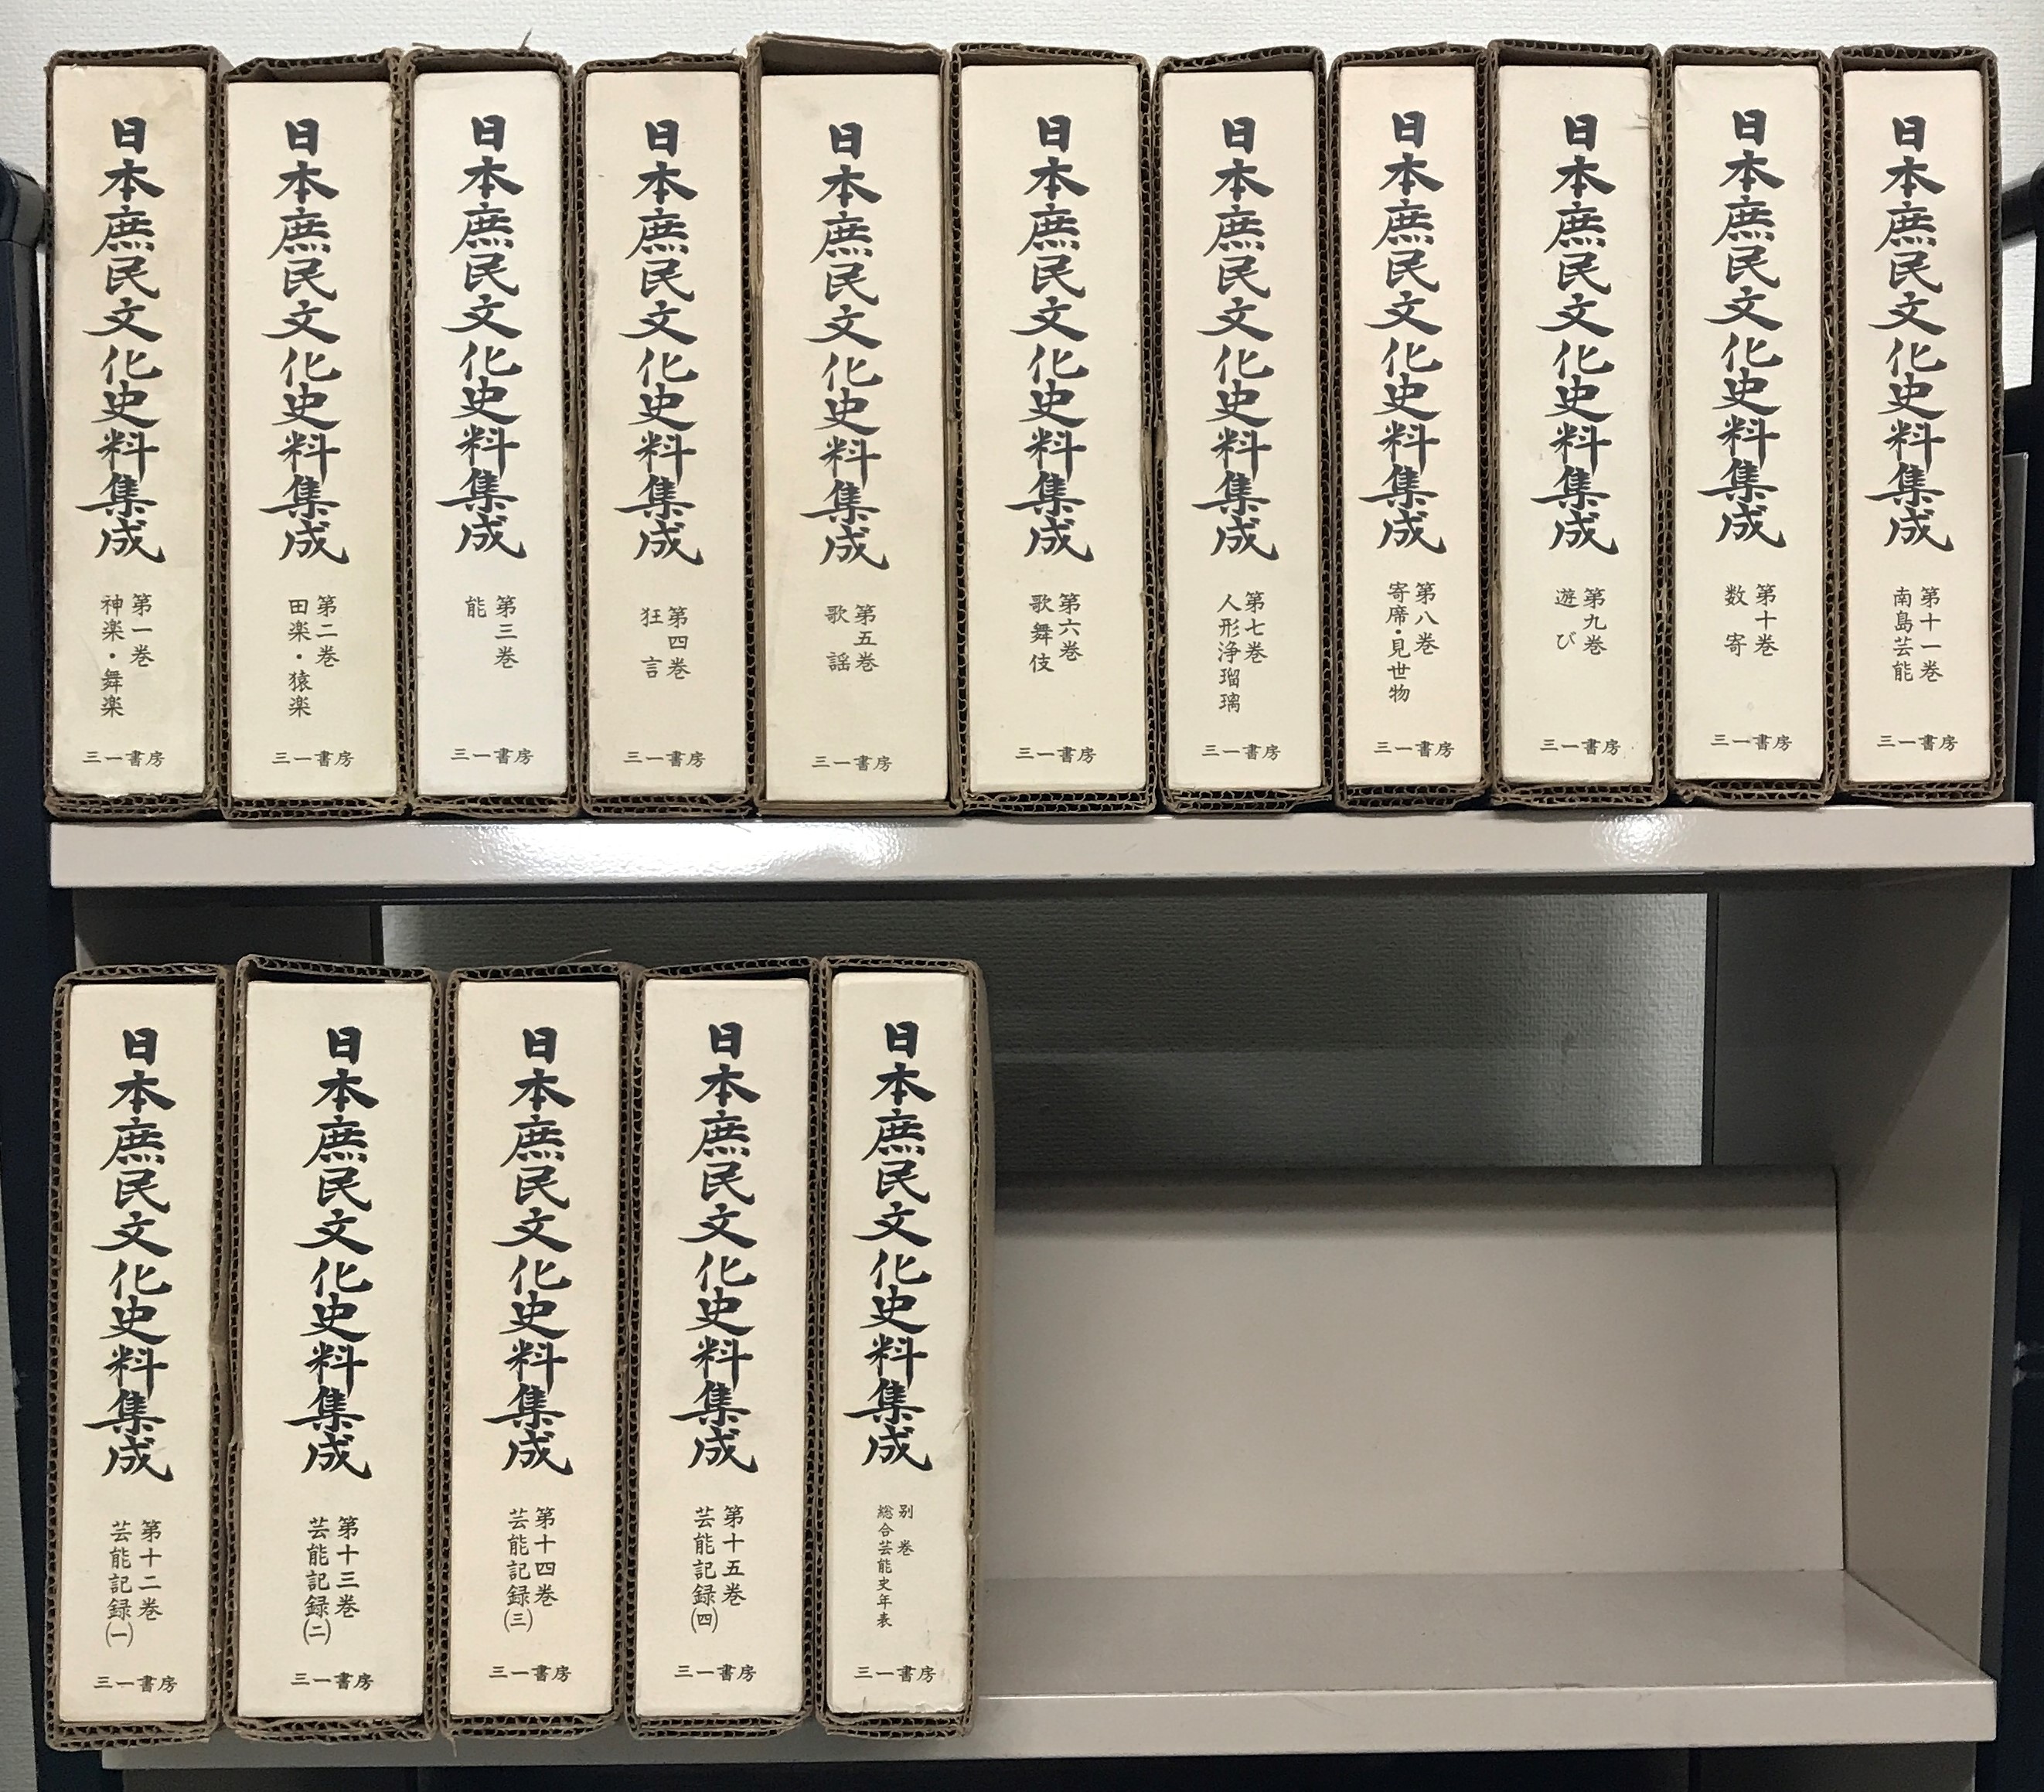 日本庶民文化史料集成（三一書房）全１６巻 –